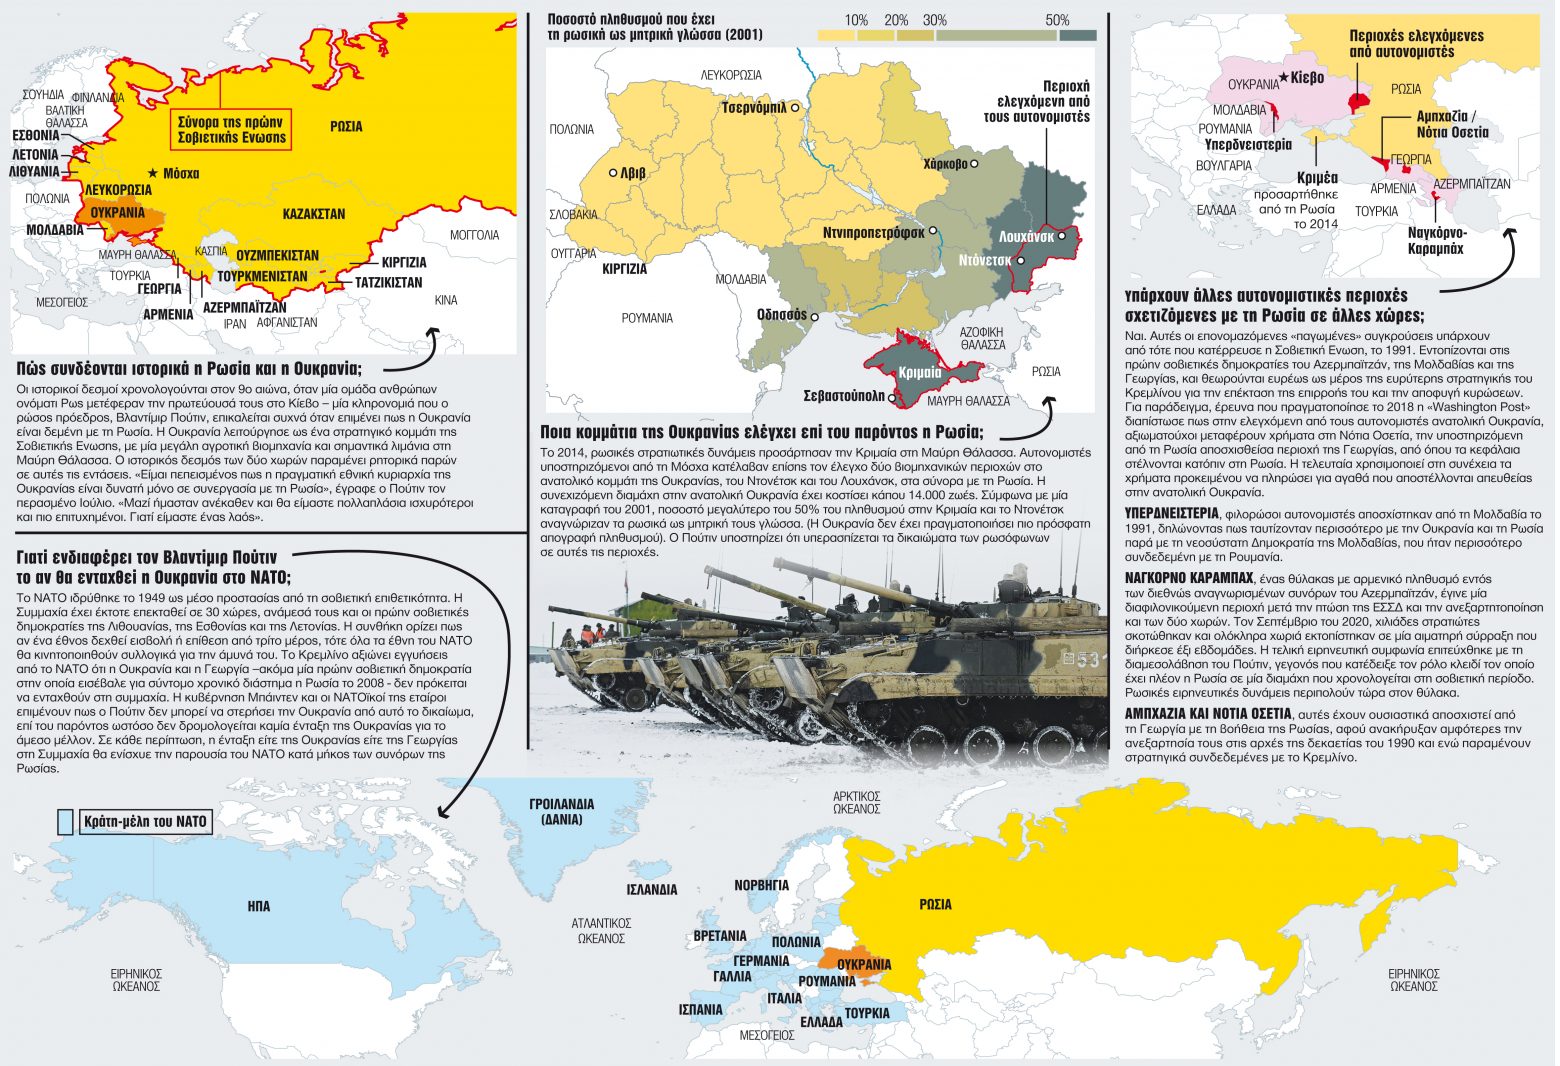 Ρωσία - Ουκρανία: Μια διαμάχη που διαμορφώνεται από στρατηγική επιρροή